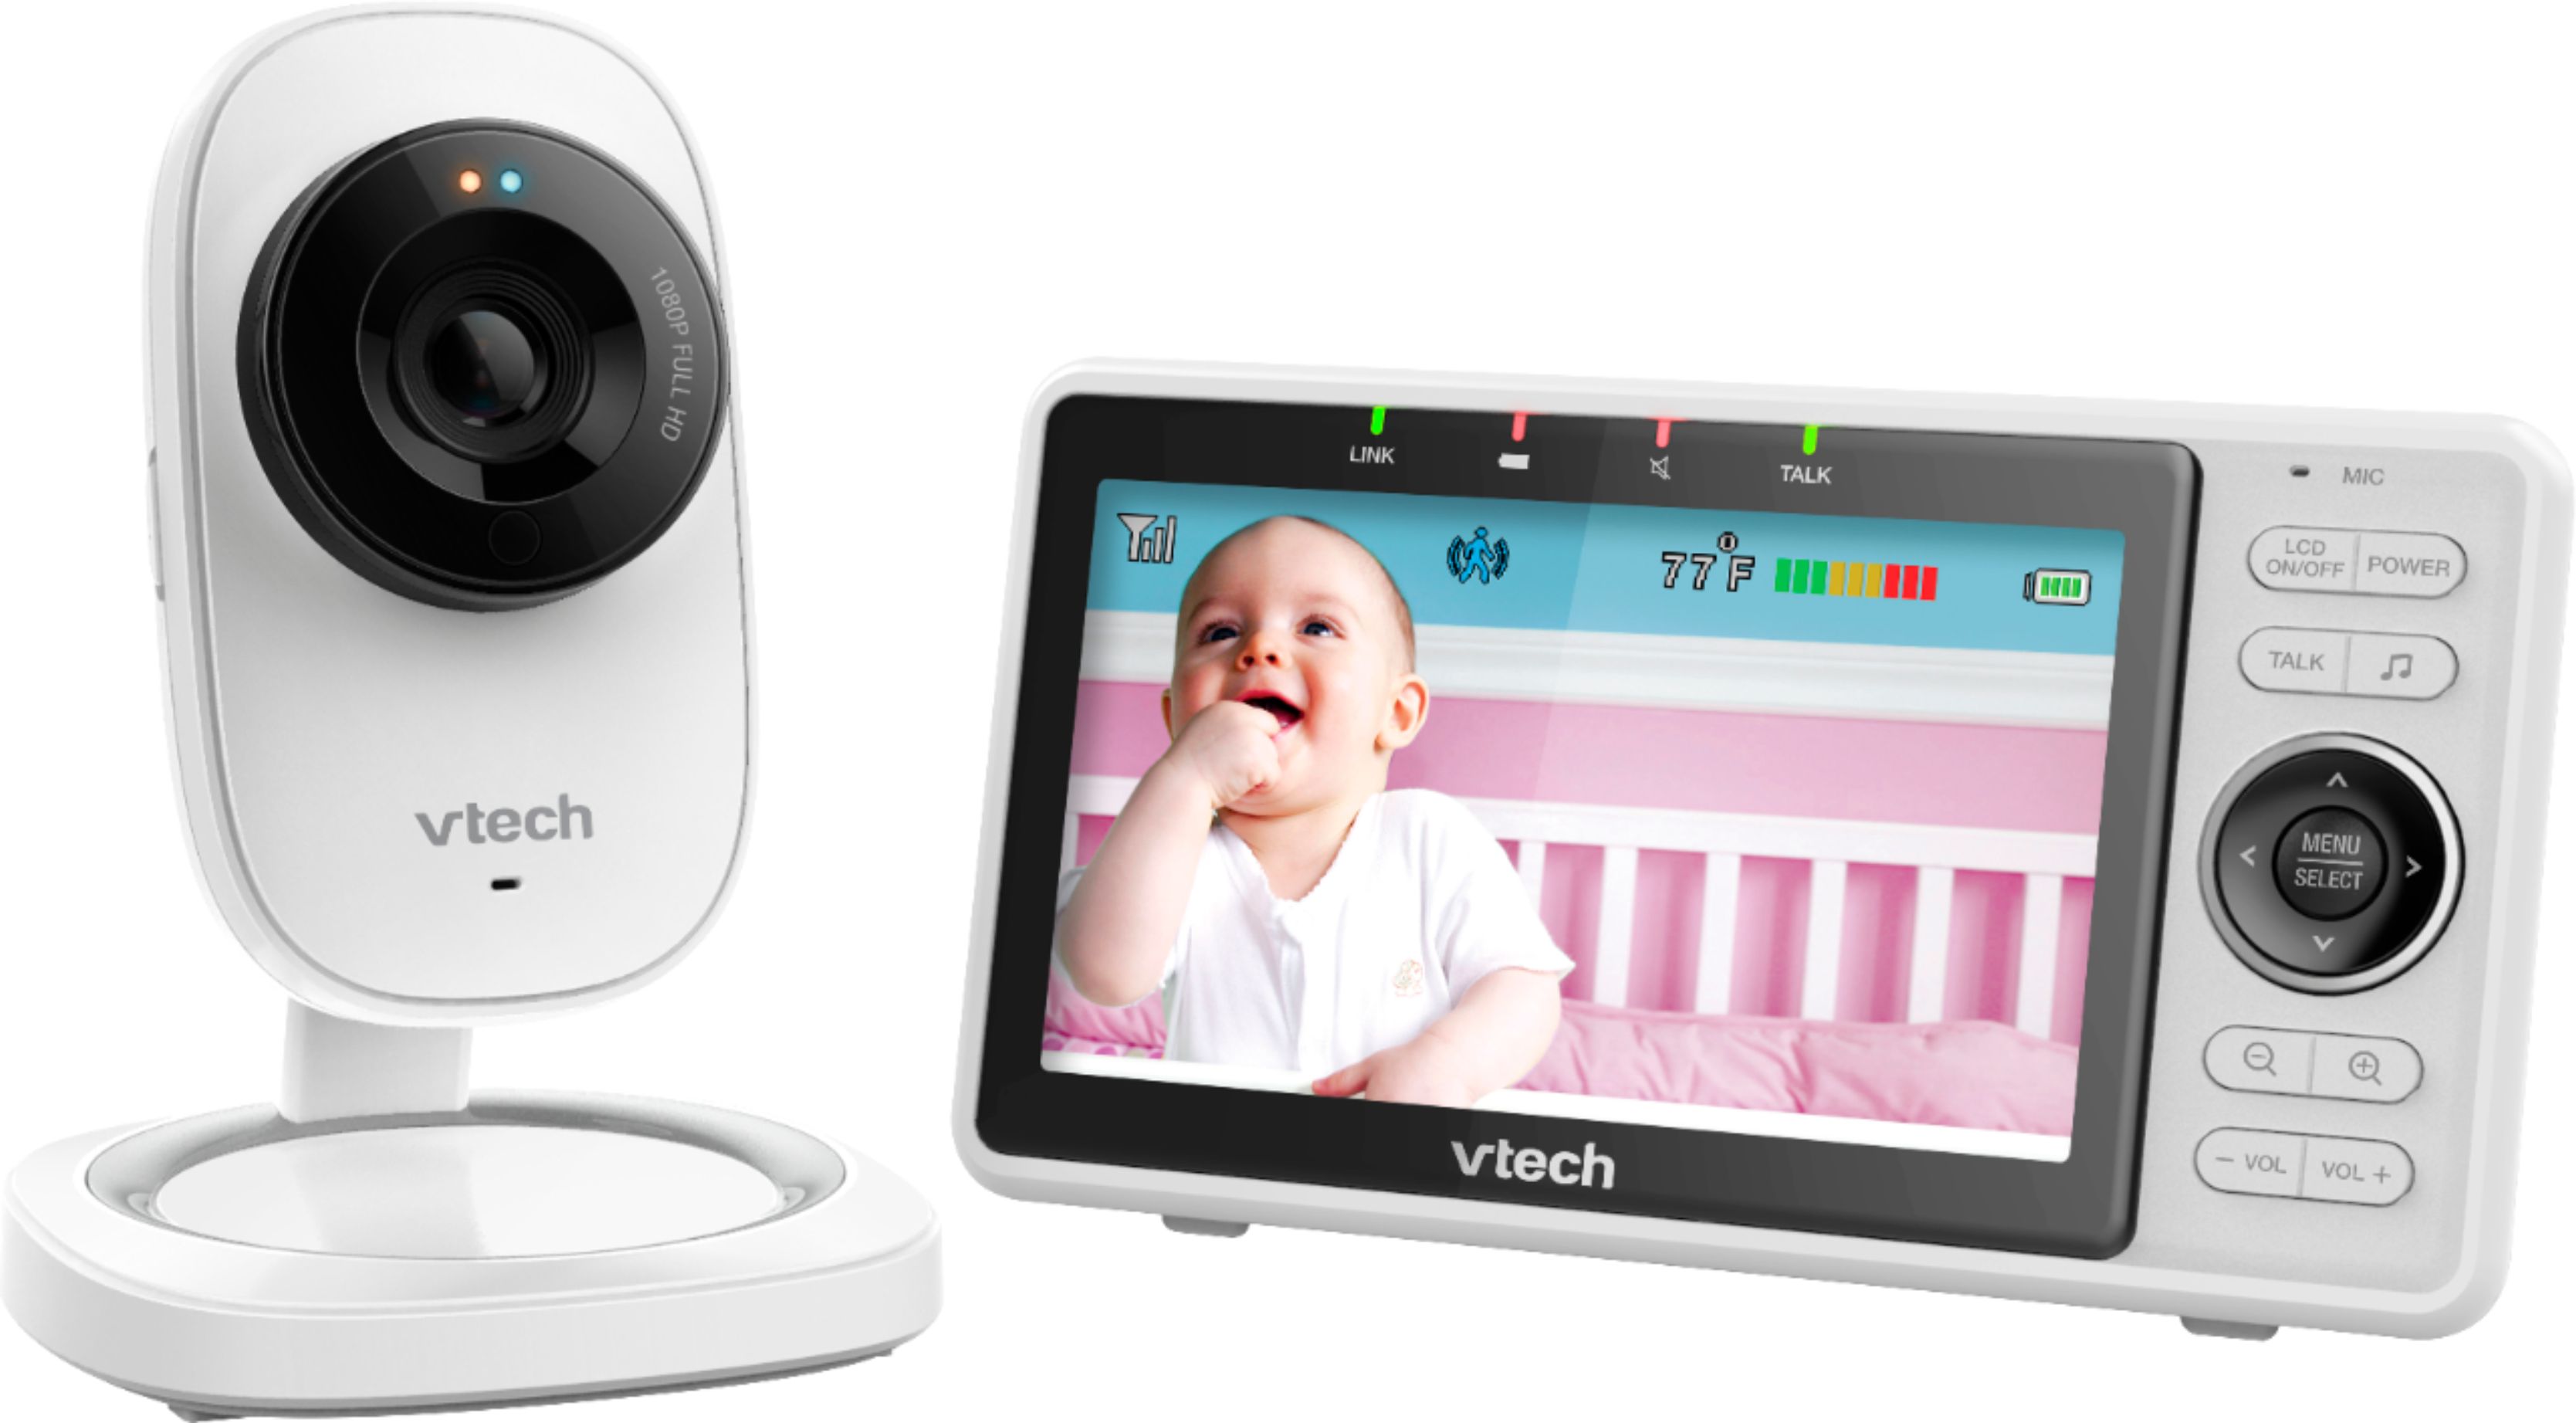 vtech wireless baby monitor